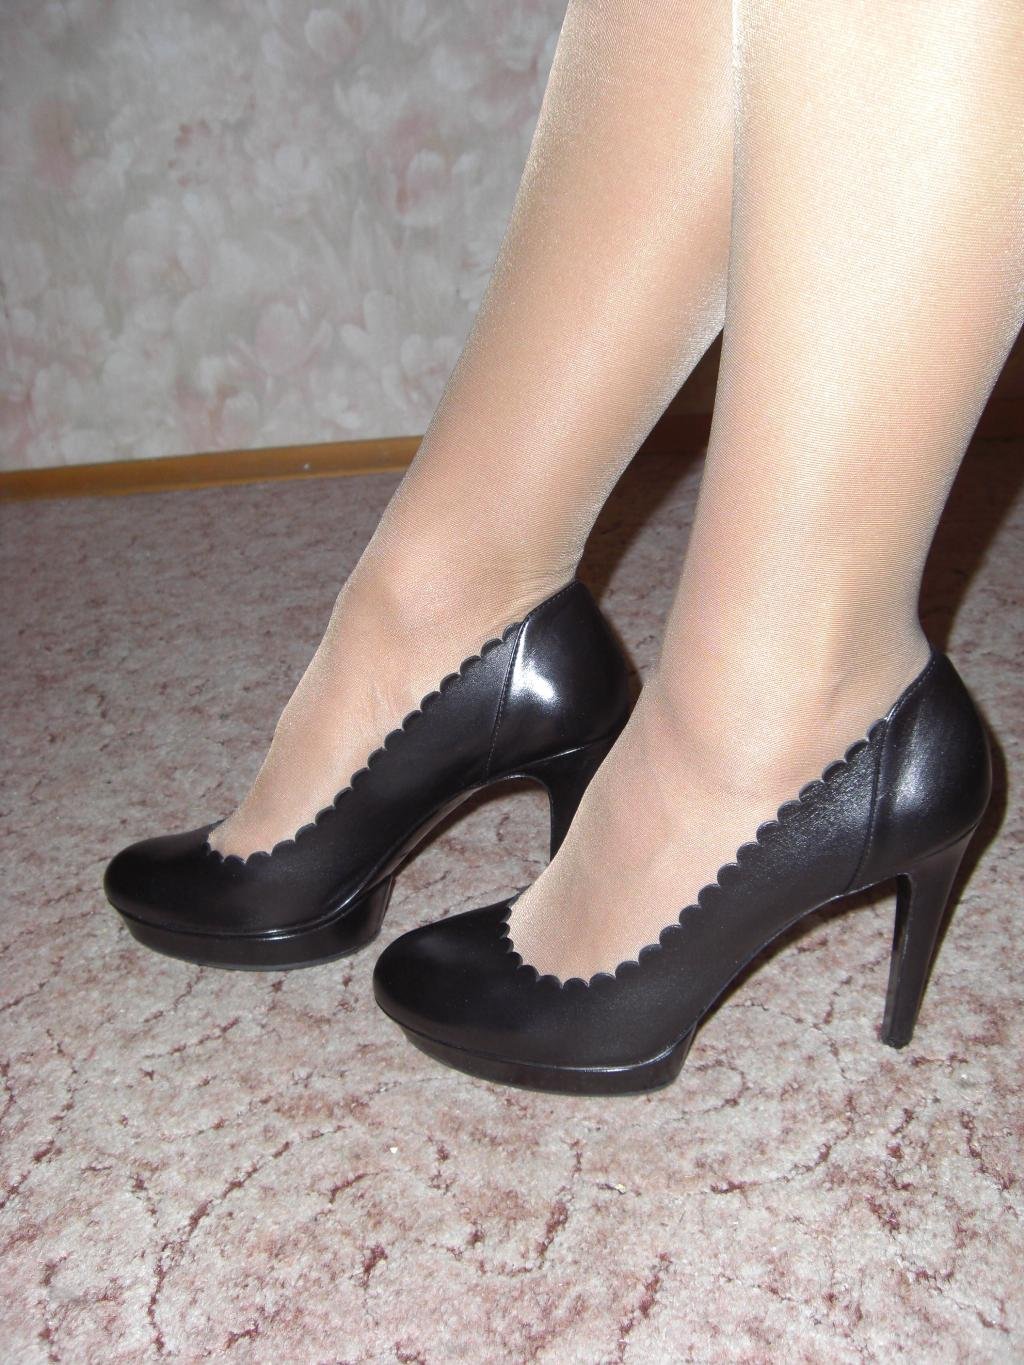 Купить обувь 41 размера женскую. Туфли на широкую ногу. Туфли женские. Туфли на широкую ногу на каблуке. Туфли на каблуке 41 размера.